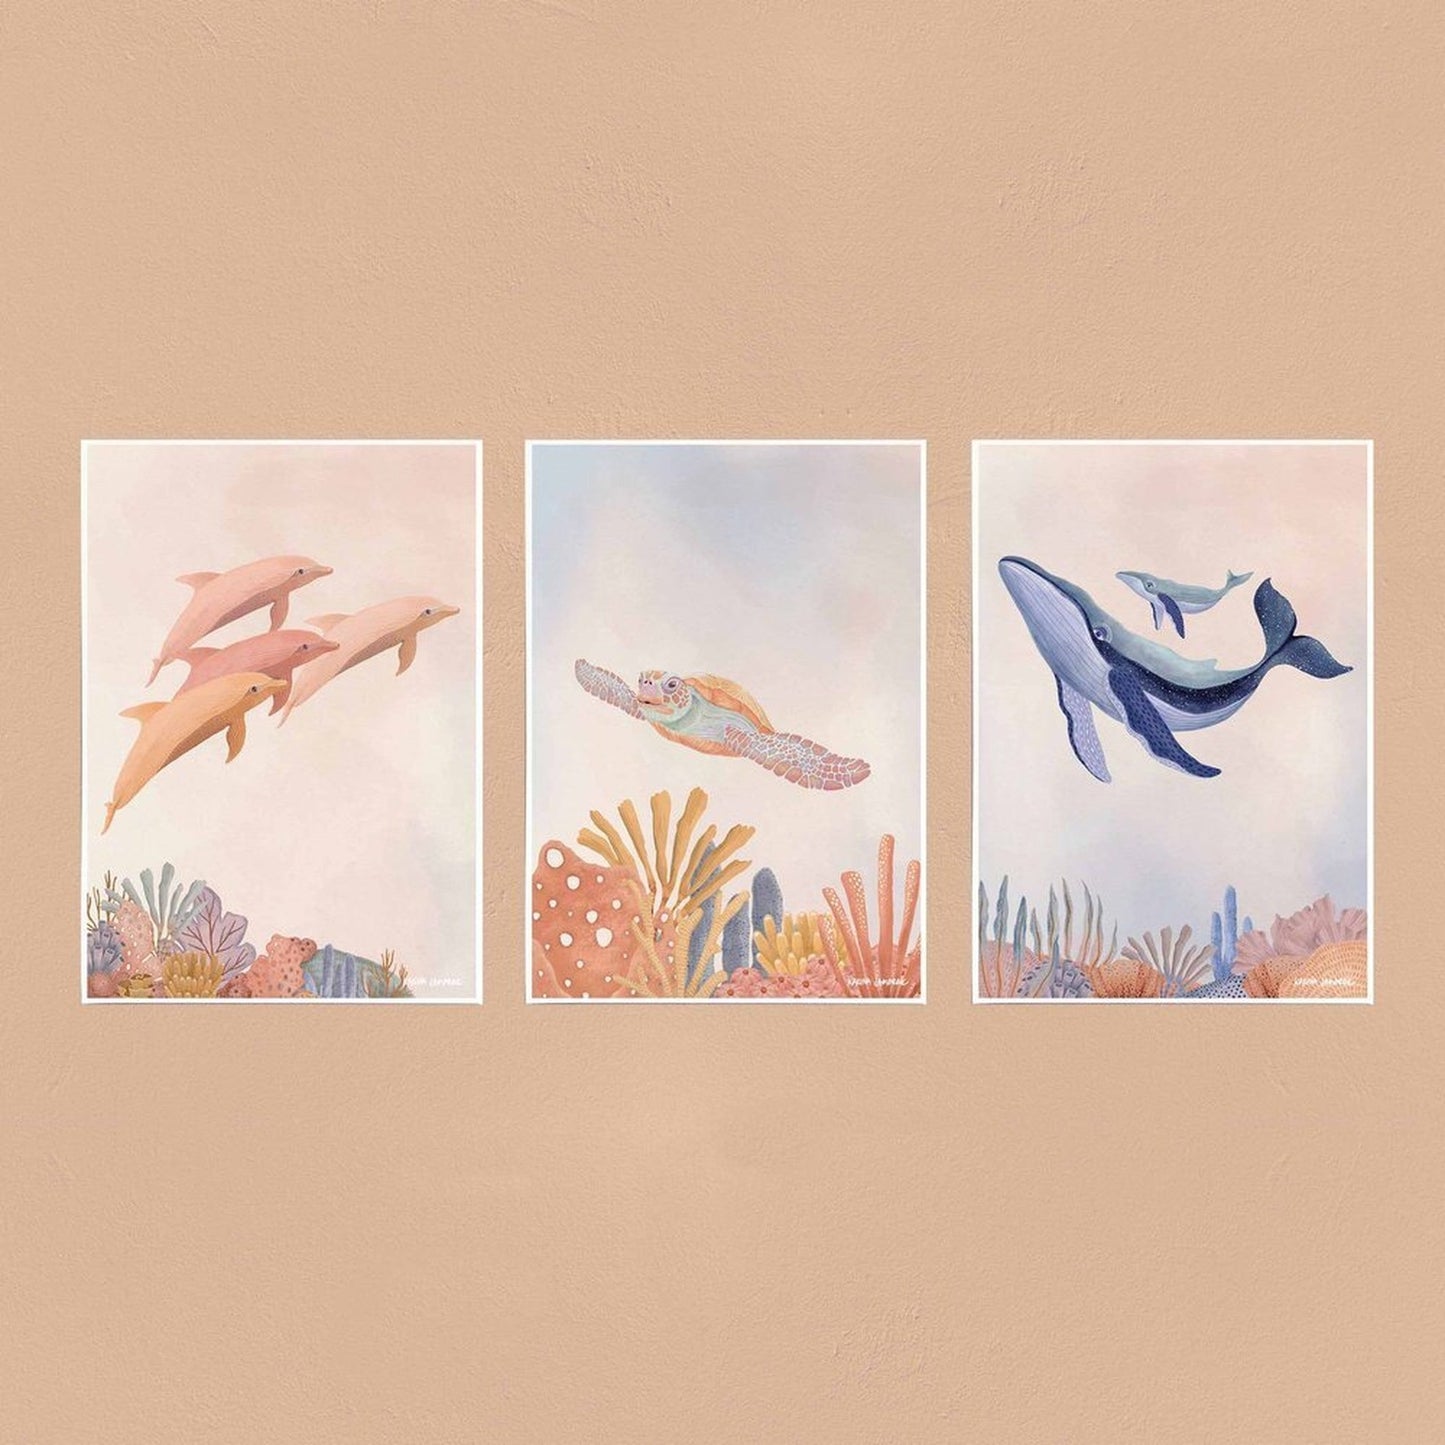 【sale】【karina jambrak art】reef glider